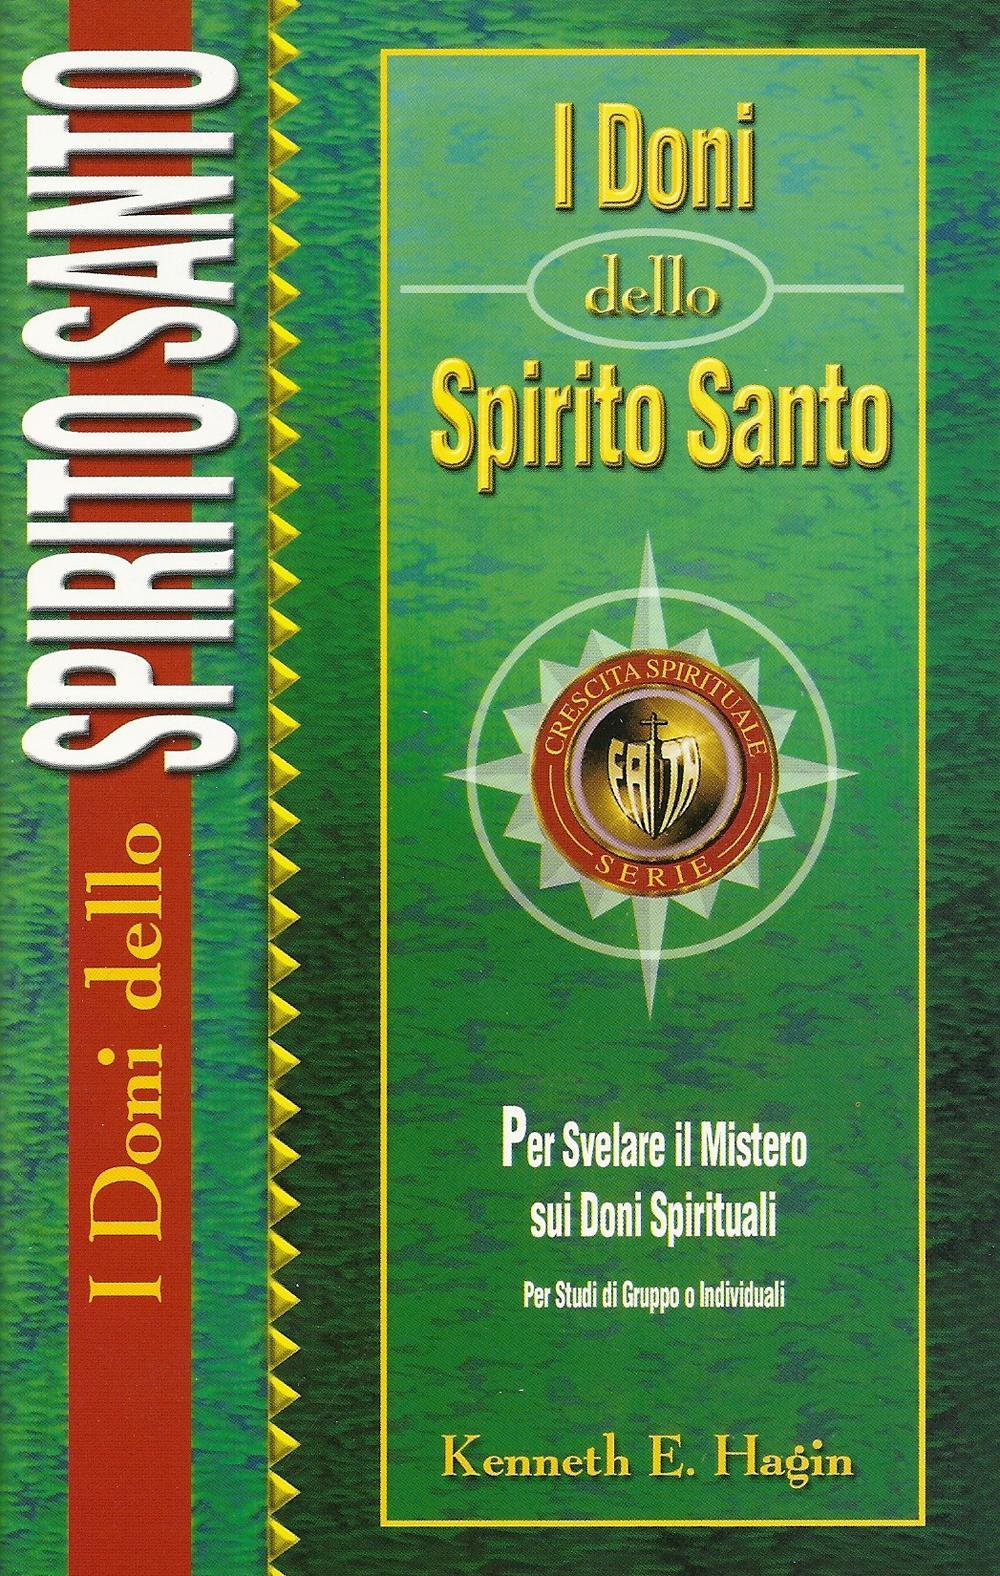 I doni dello spirito santo. Per svelare il mistero sui doni spirituali